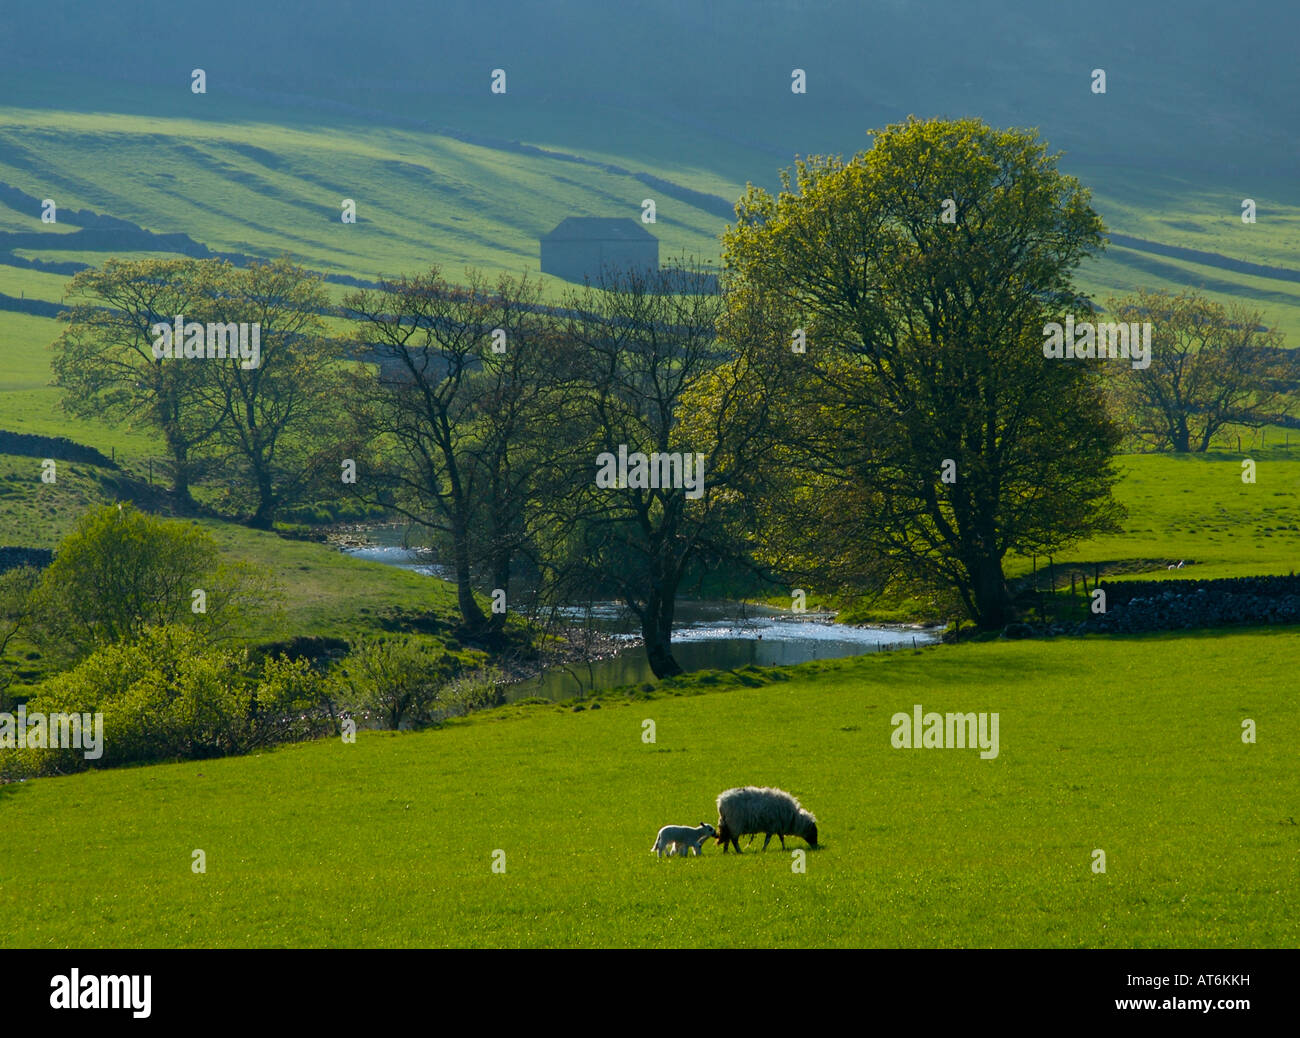 Schaf und Lamm auf der Weide von Flusses Wharfe, Upper Wharfedale Yorkshire Dales National Park, UK Stockfoto